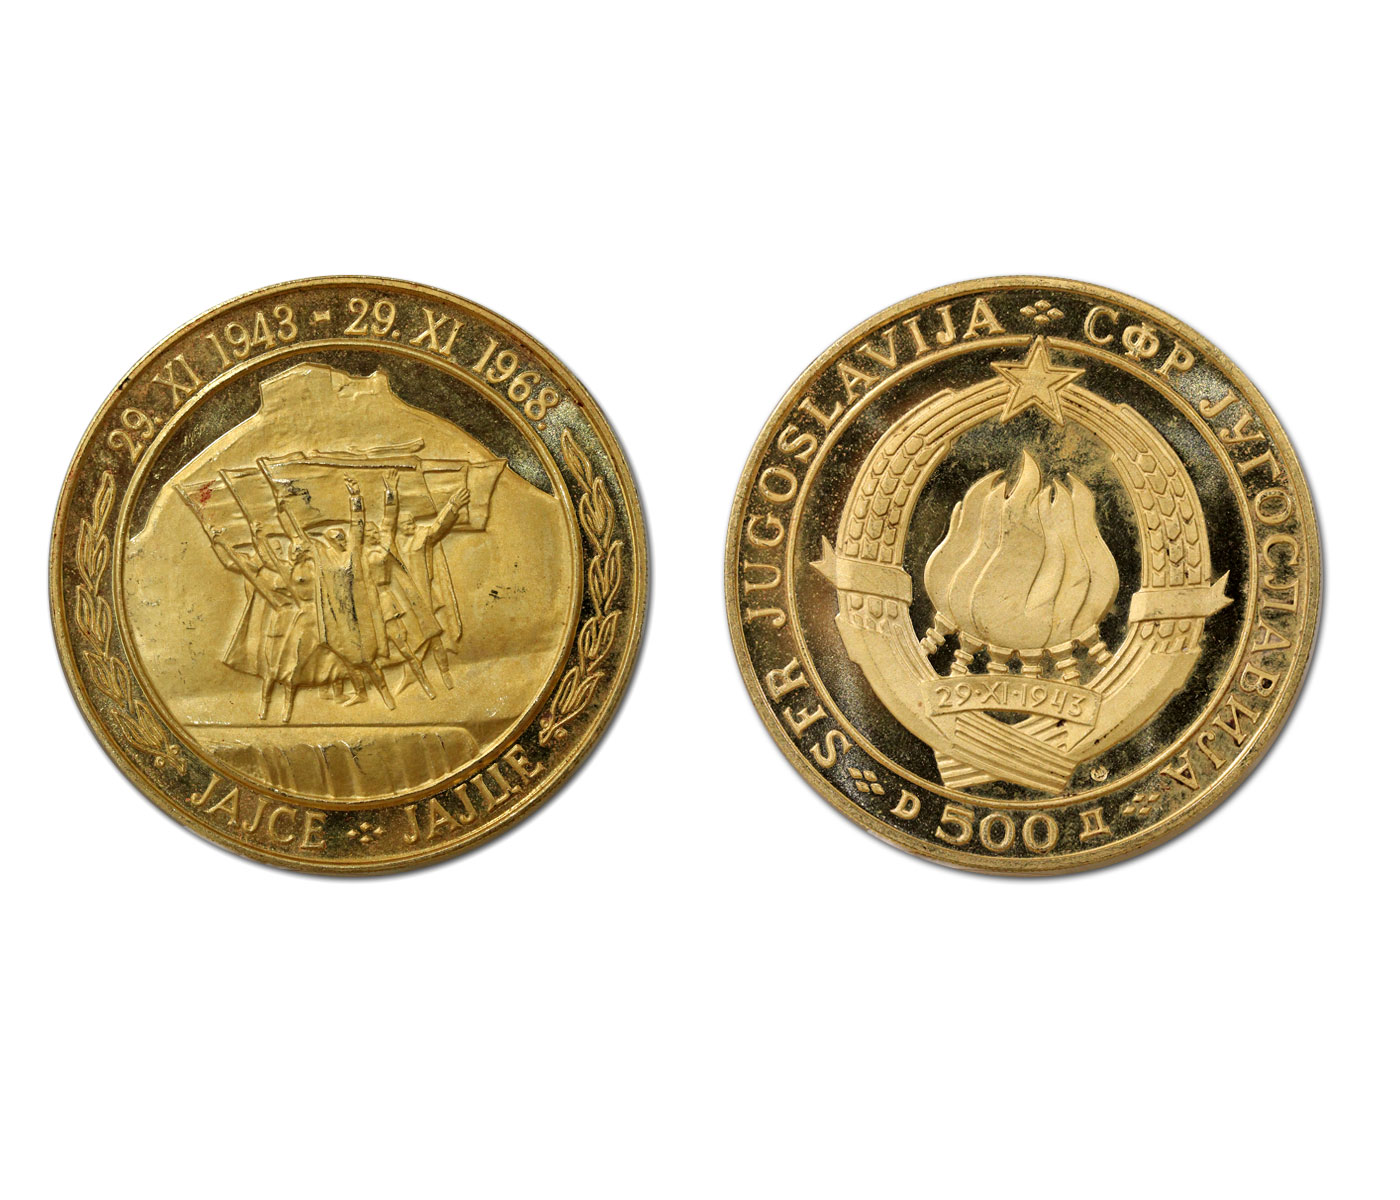 Anniv. della Repubblica - 500 dinara gr. 39,10 in oro 900/000